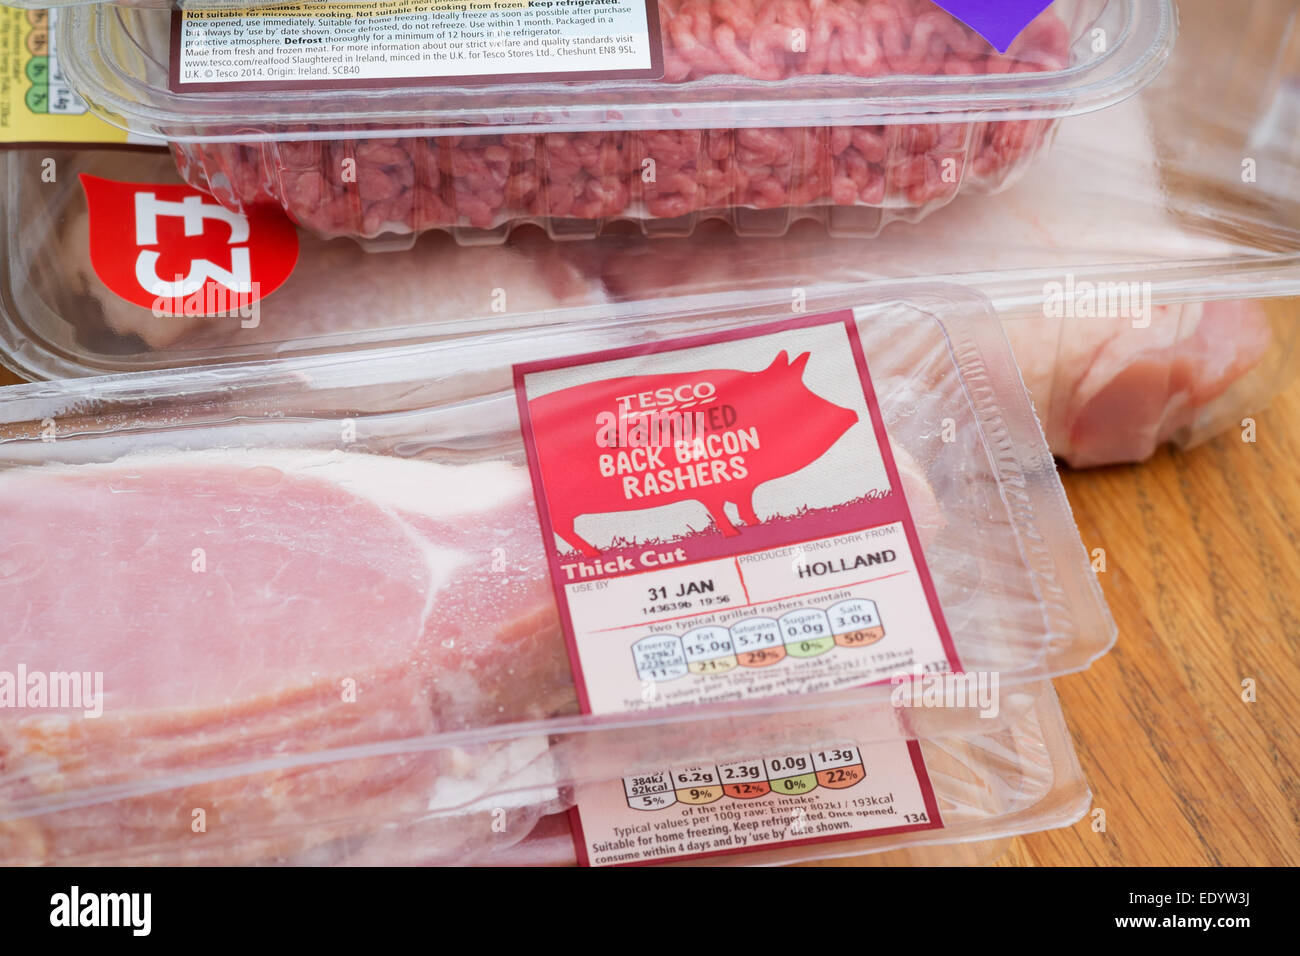 La durata settimanale del negozio di alimentari: proprio marchio a base di carne confezionati articoli acquistati al supermercato Tesco - Carni bovine Carne macinata e la pancetta Foto Stock